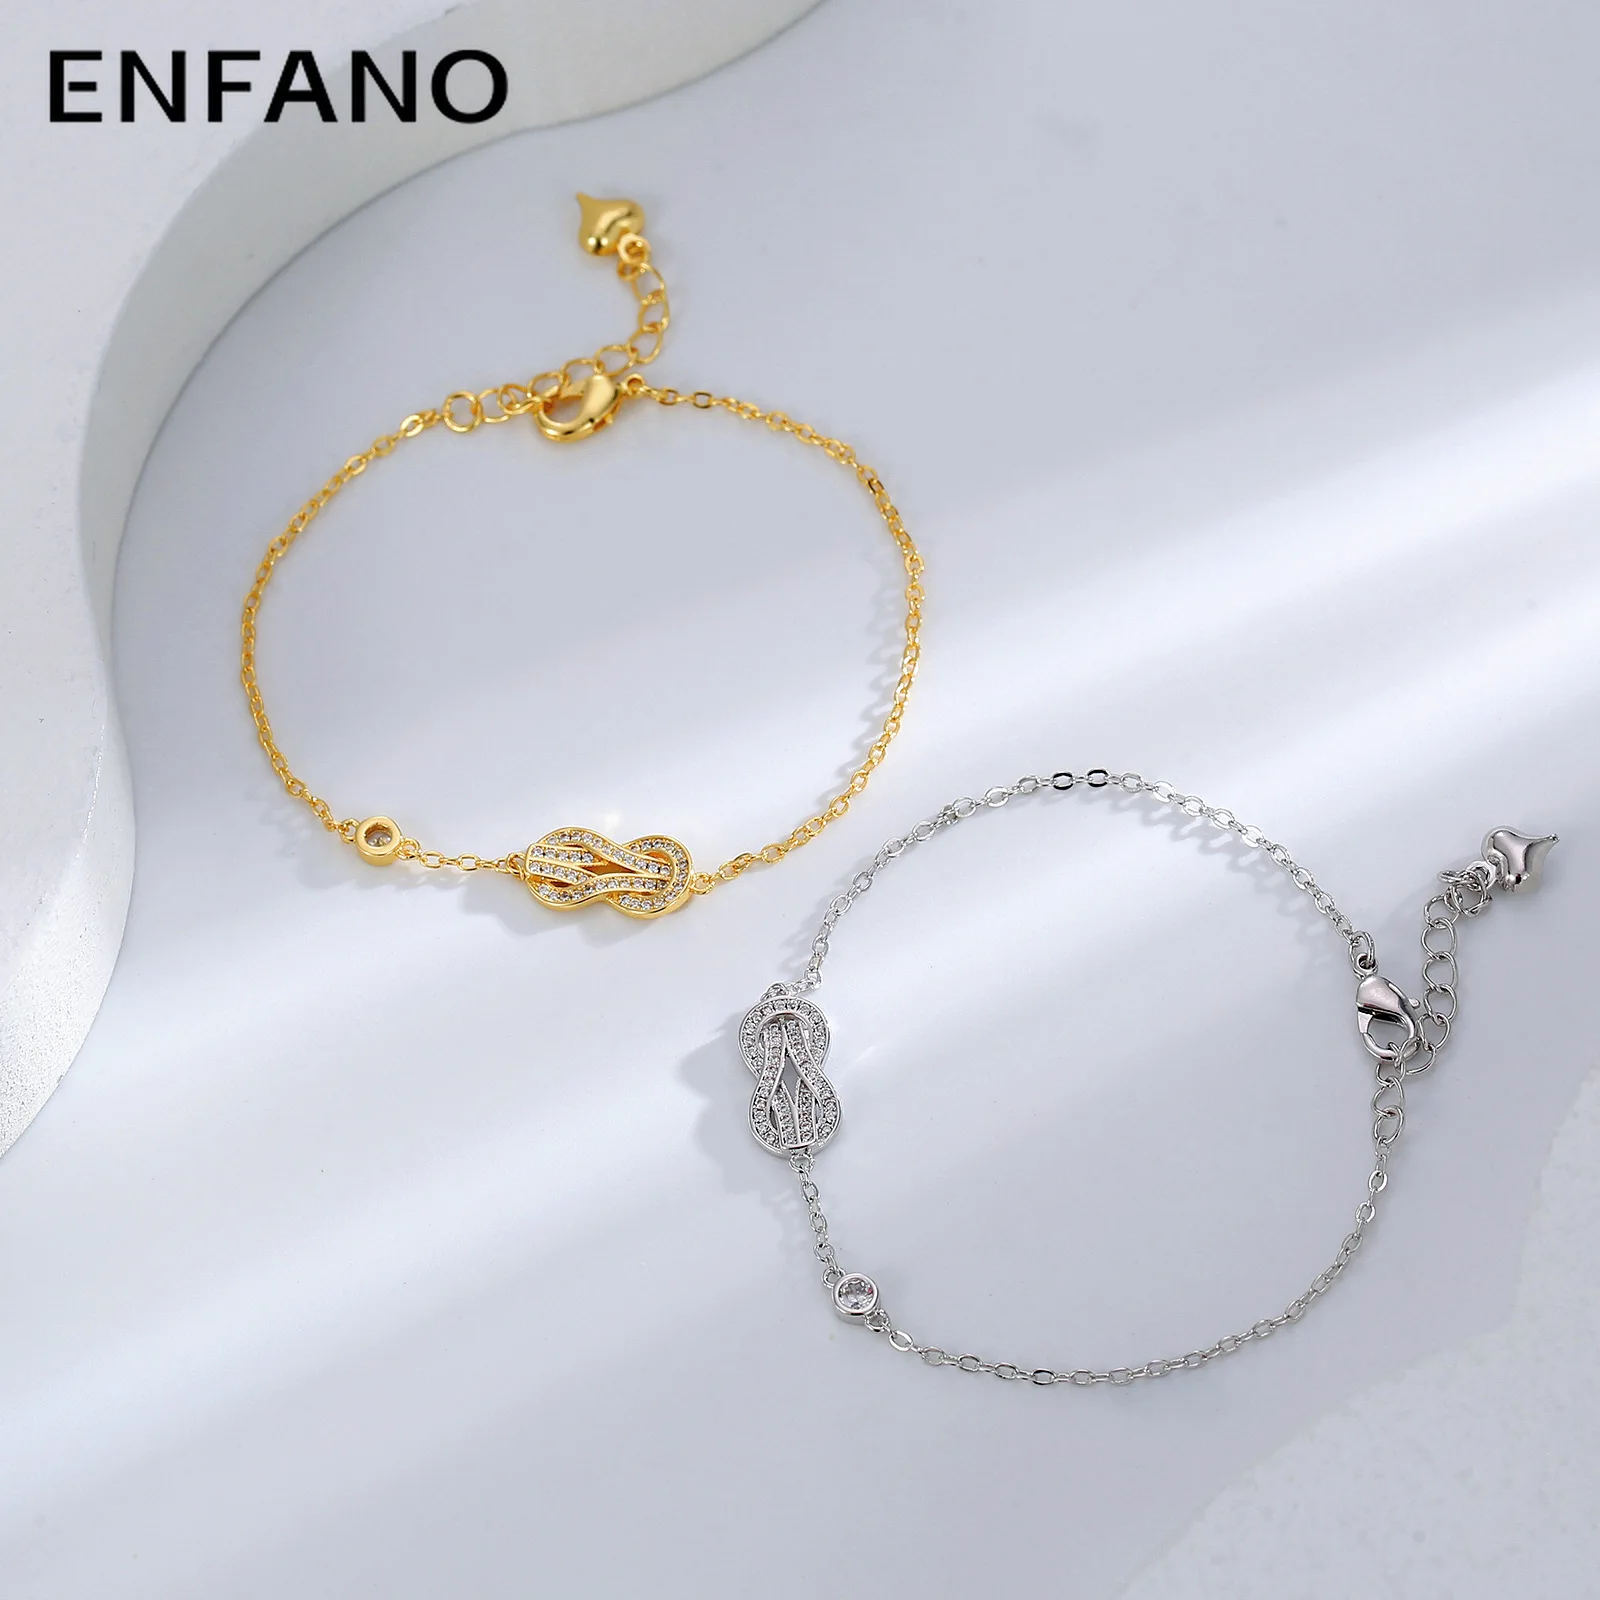 

Простой холодный стильный браслет Enfano, нишевой дизайн, подходящий ко всему